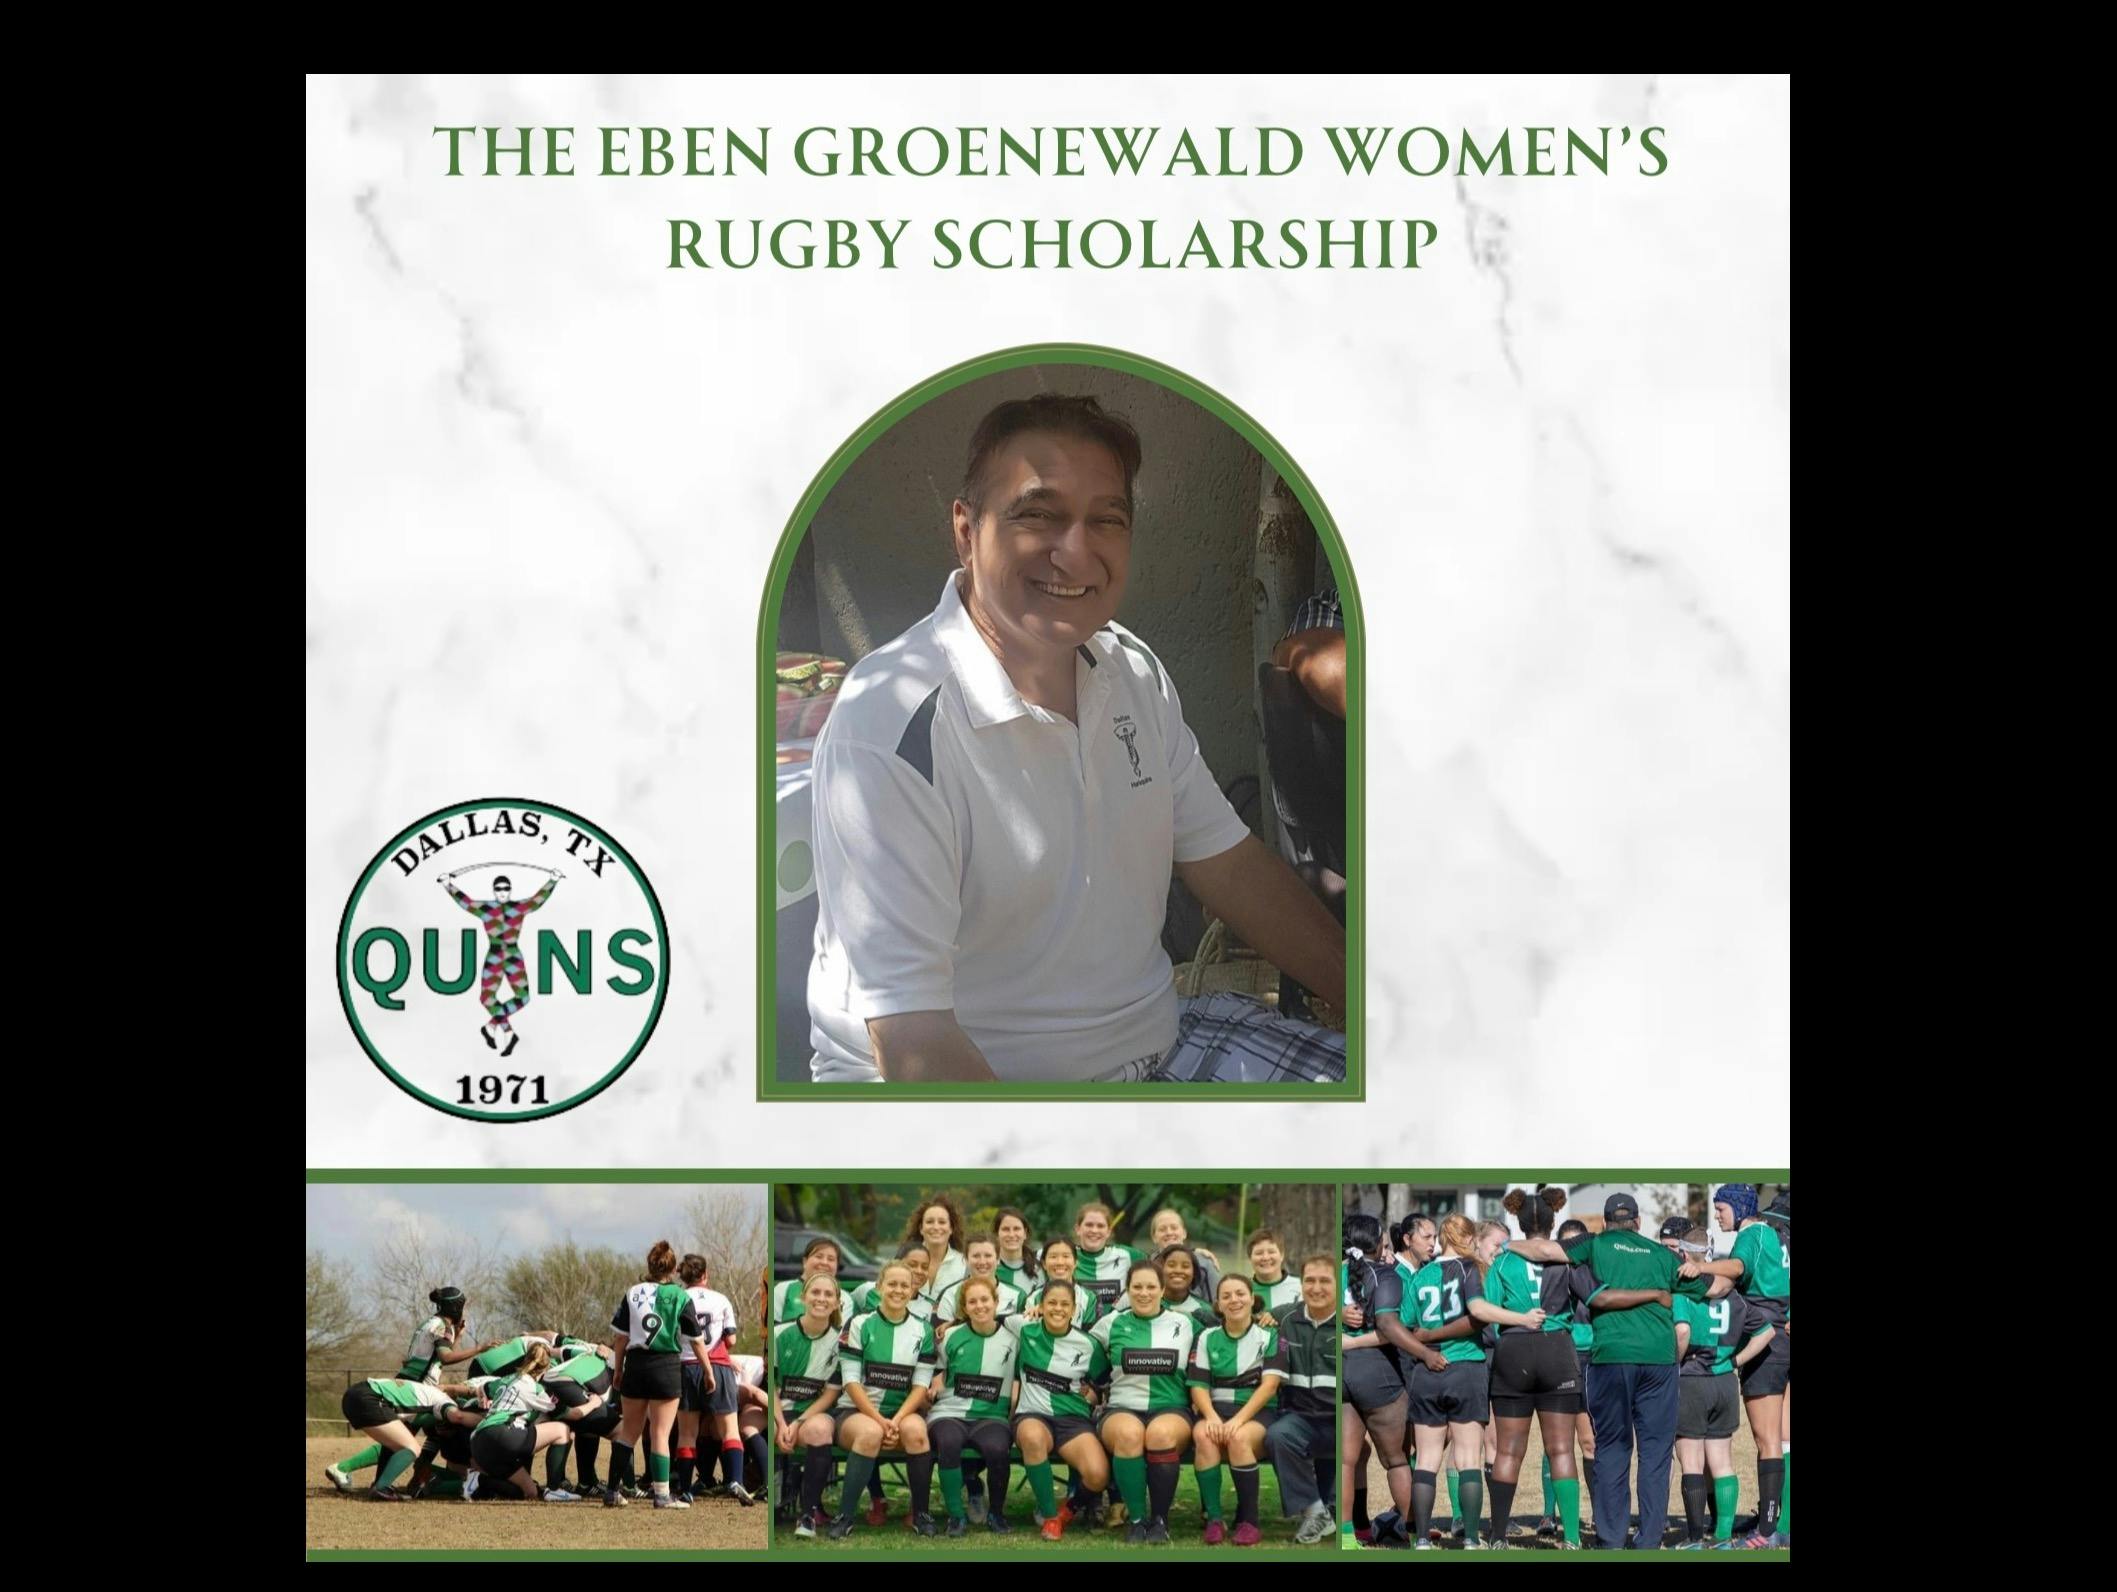 Eben Groenwald’s Women's Rugby Scholarship